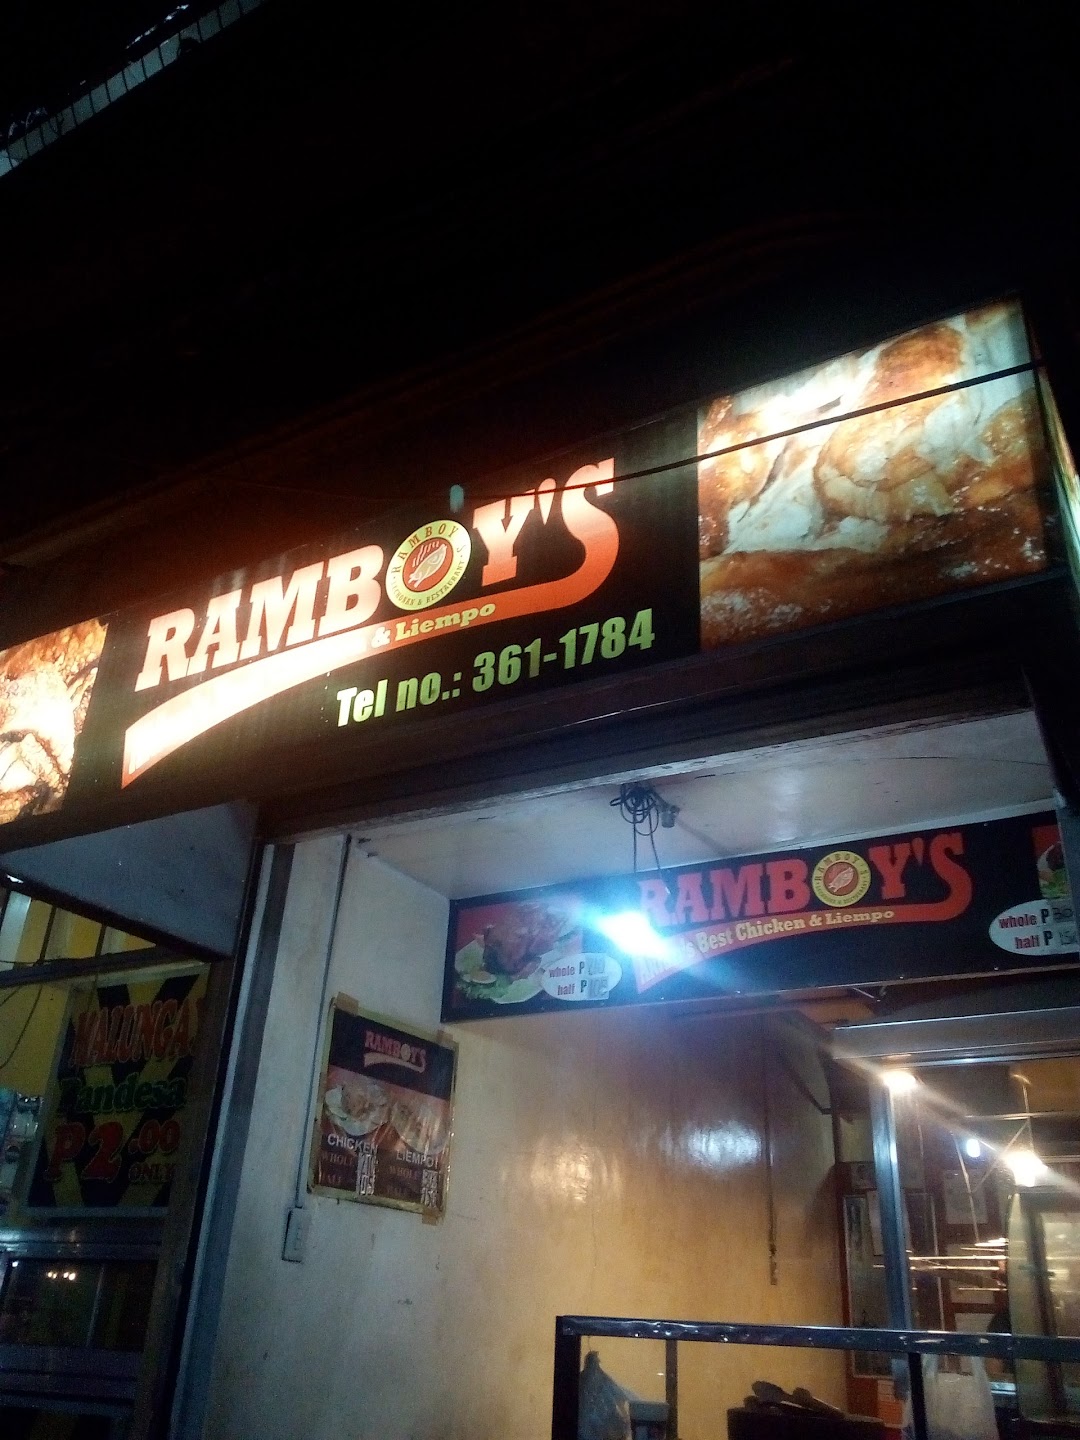 Ramboys Aklans Best Chicken & Liempo